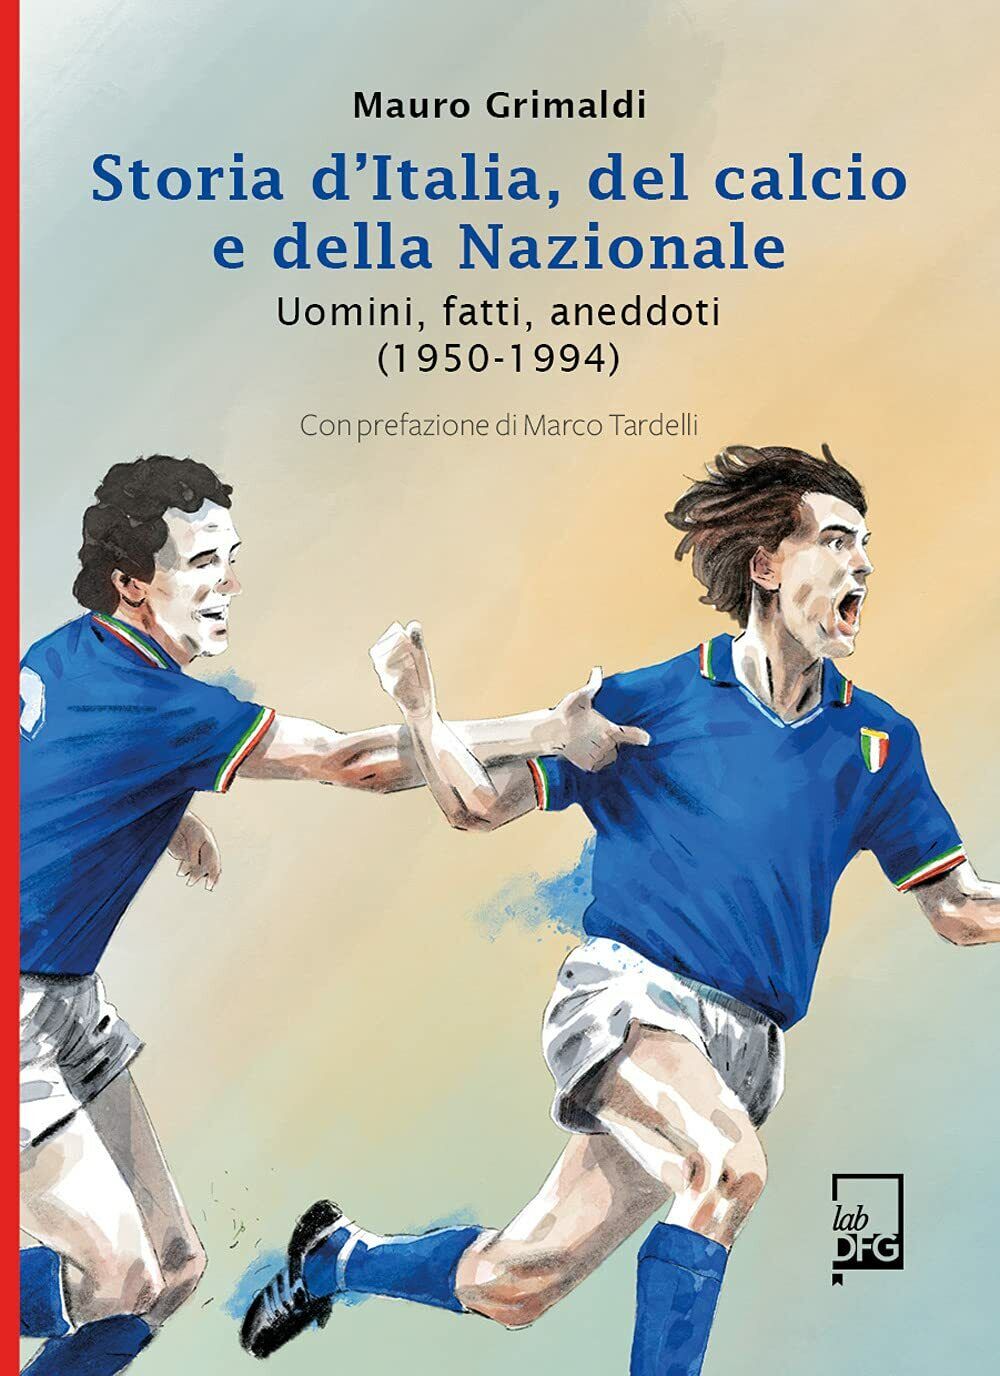 Storia d'Italia del Calcio e della Nazionale - Mauro Grimaldi - DFG Lab, 2021